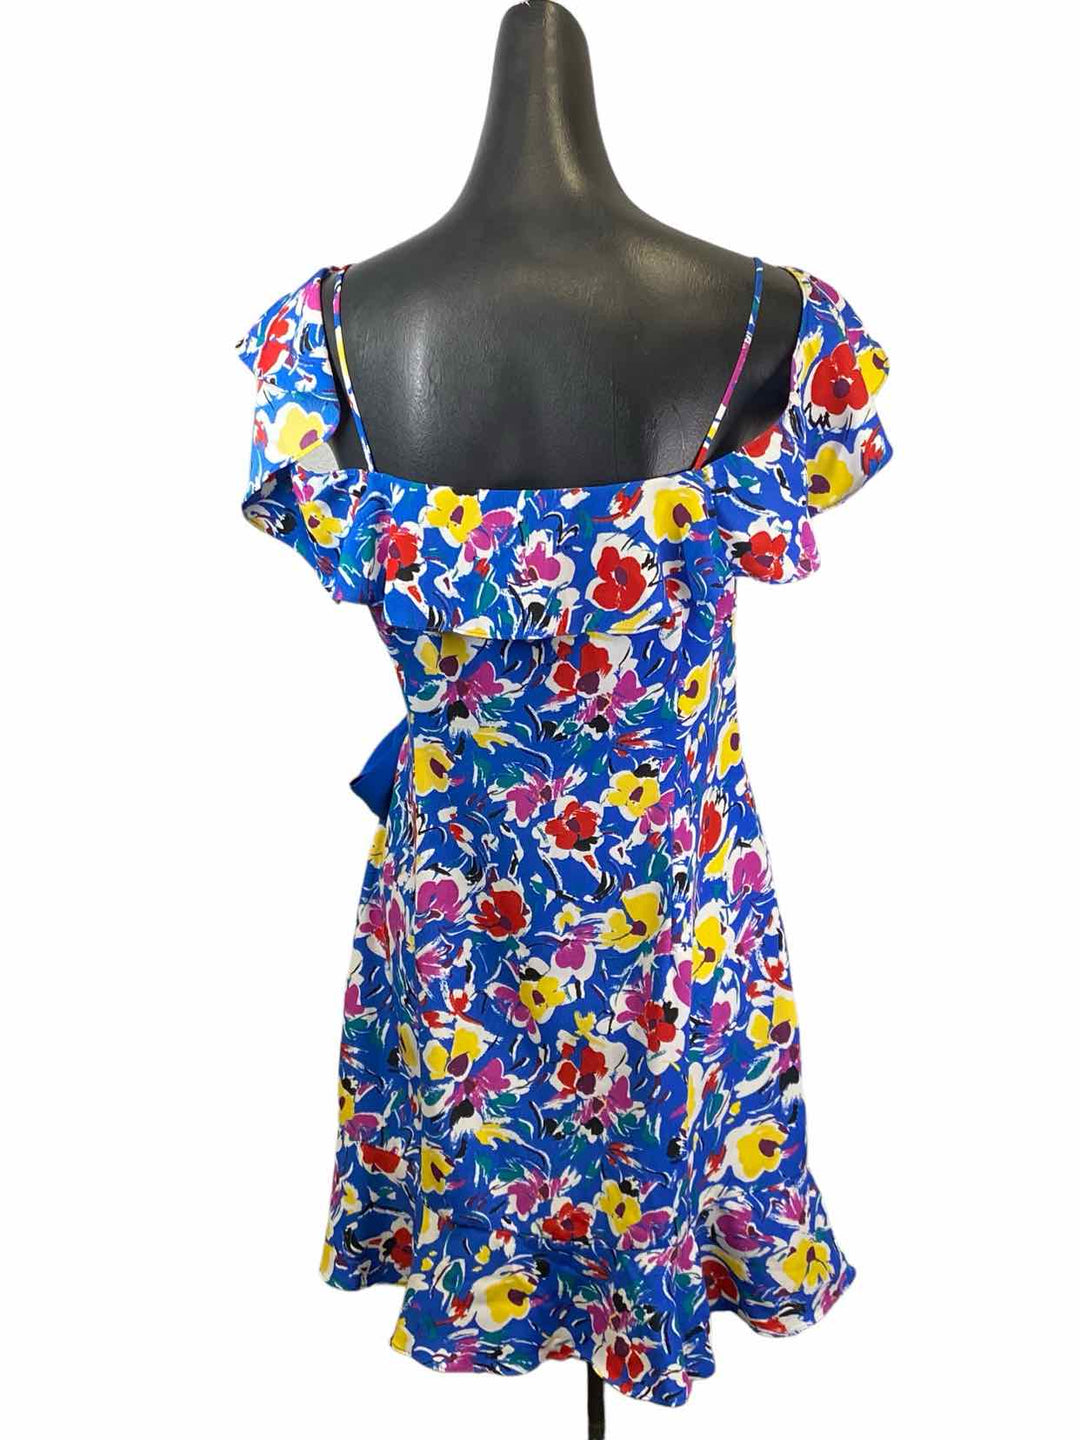 TOPSHOP Size 10 Blue Multi Floral Dress